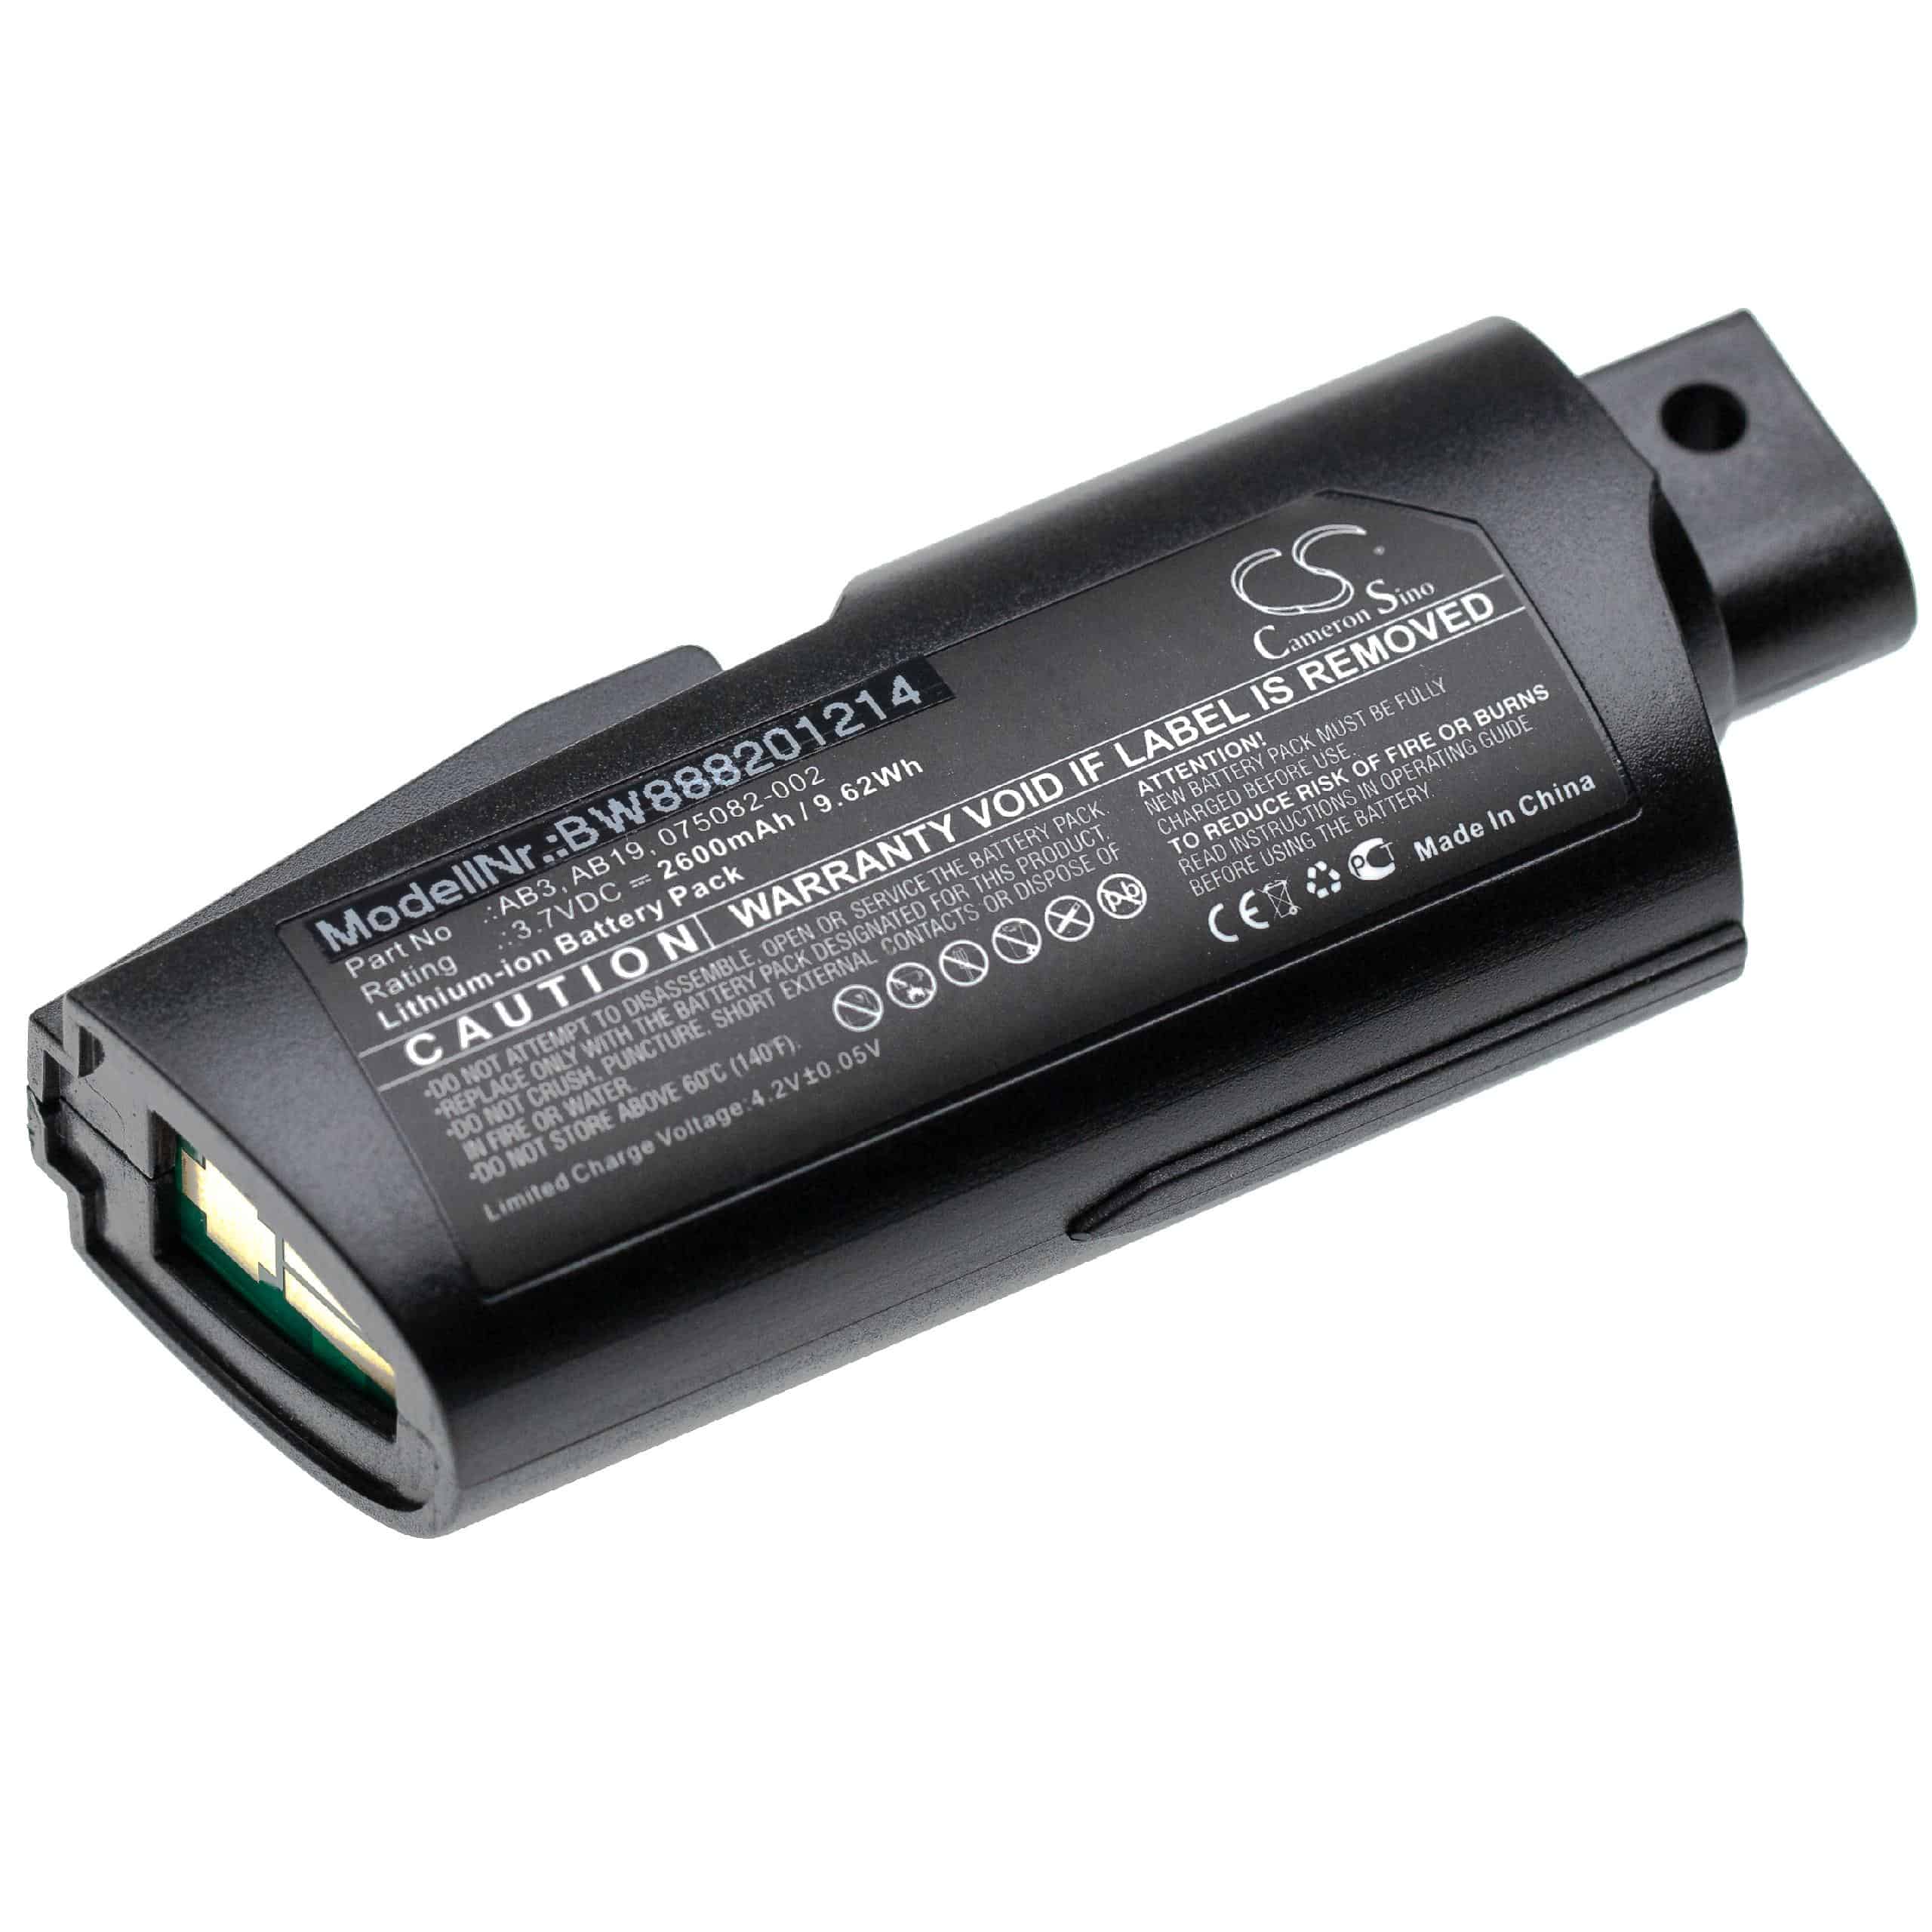 Batterie remplace Intermec AB19, 075082-002, AB3 pour scanner de code-barre - 2600mAh 3,7V Li-ion